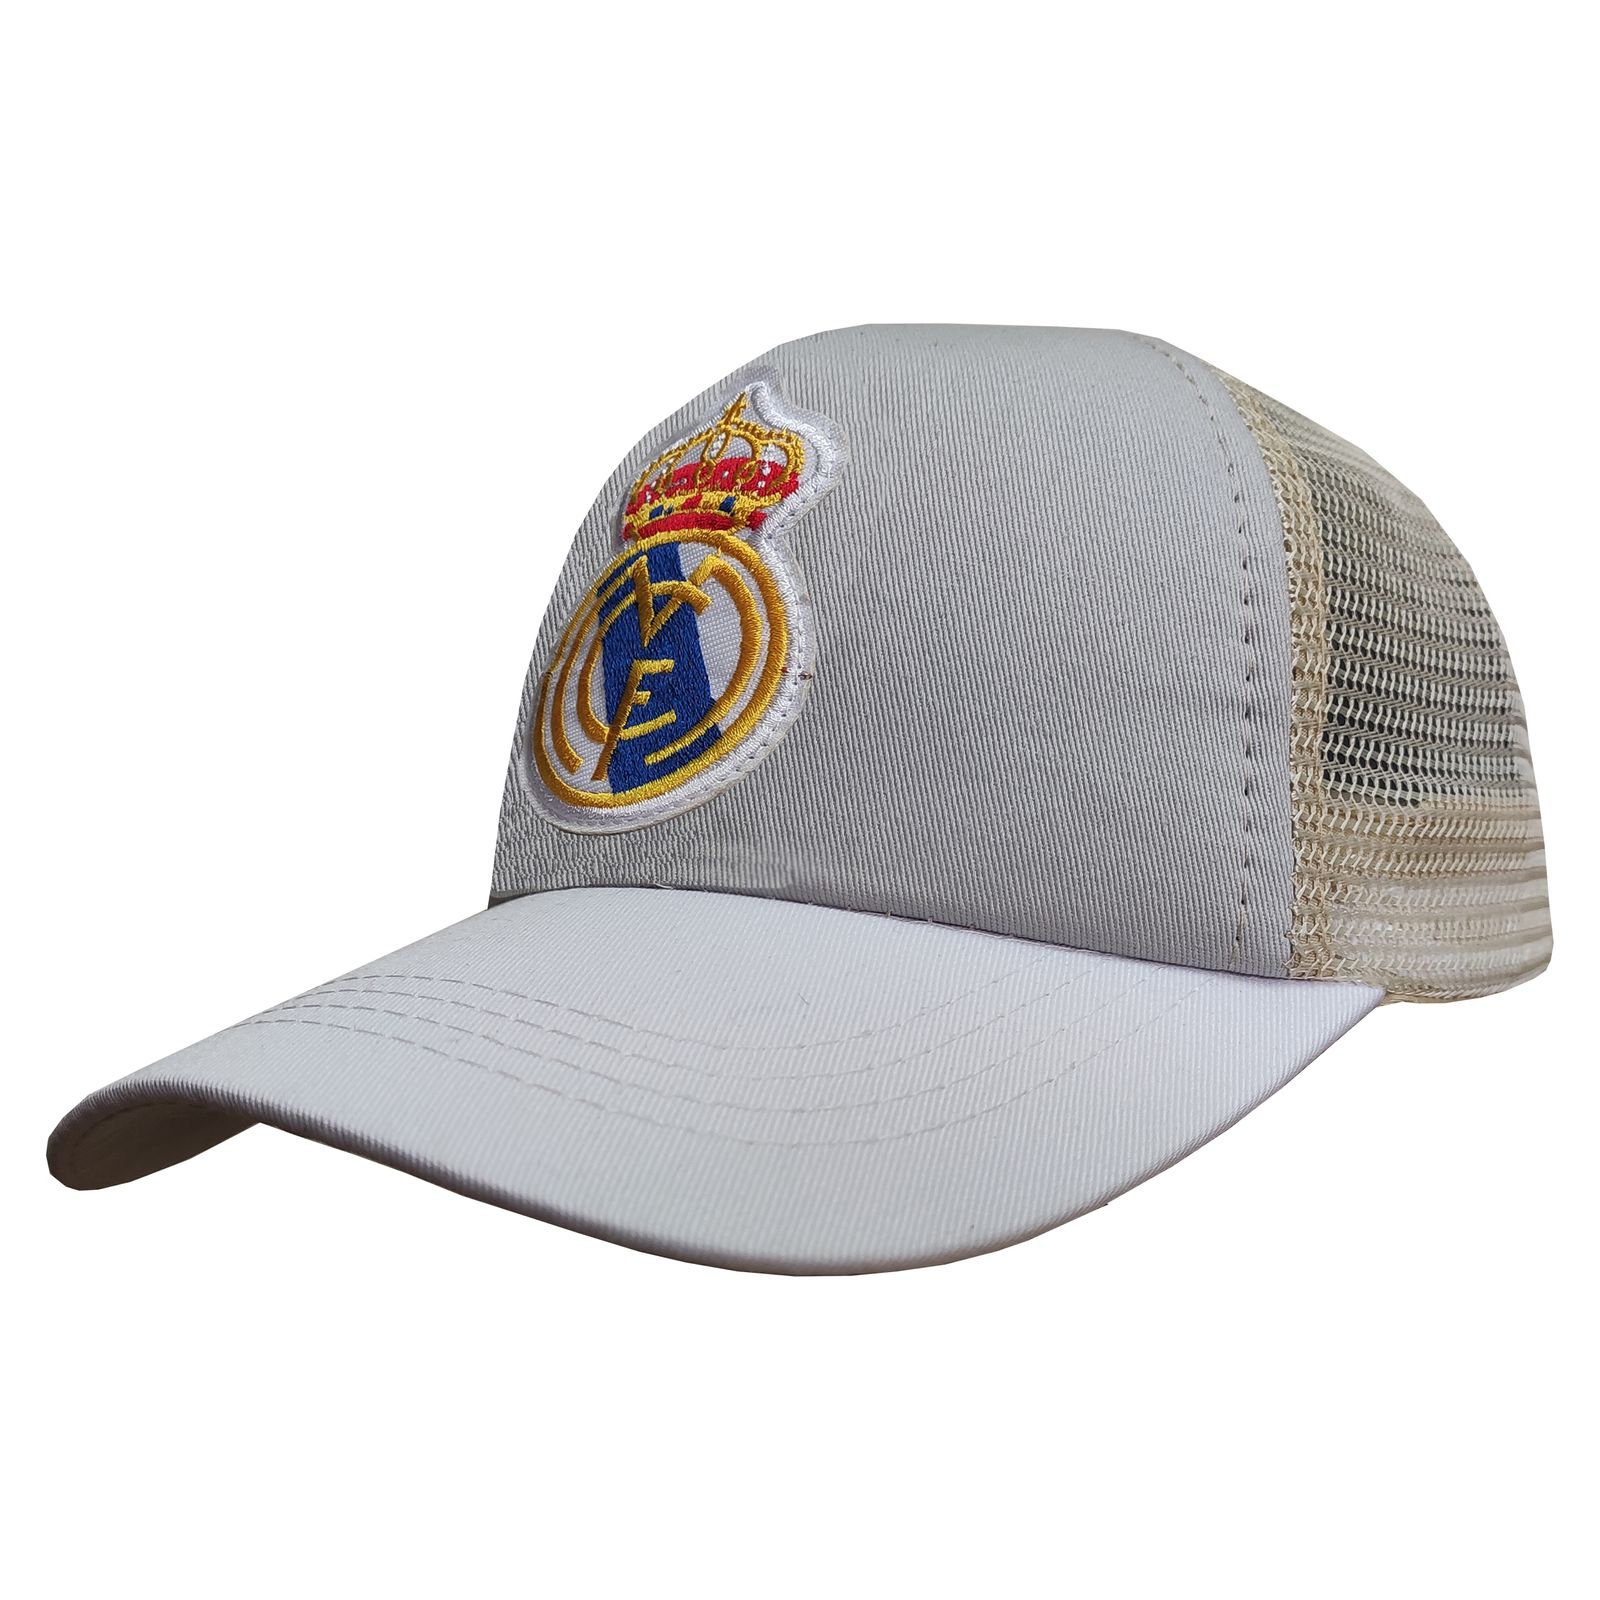 کلاه کپ پسرانه طرح رئال مادرید کد PT-30367 رنگ طوسی روشن -  - 2